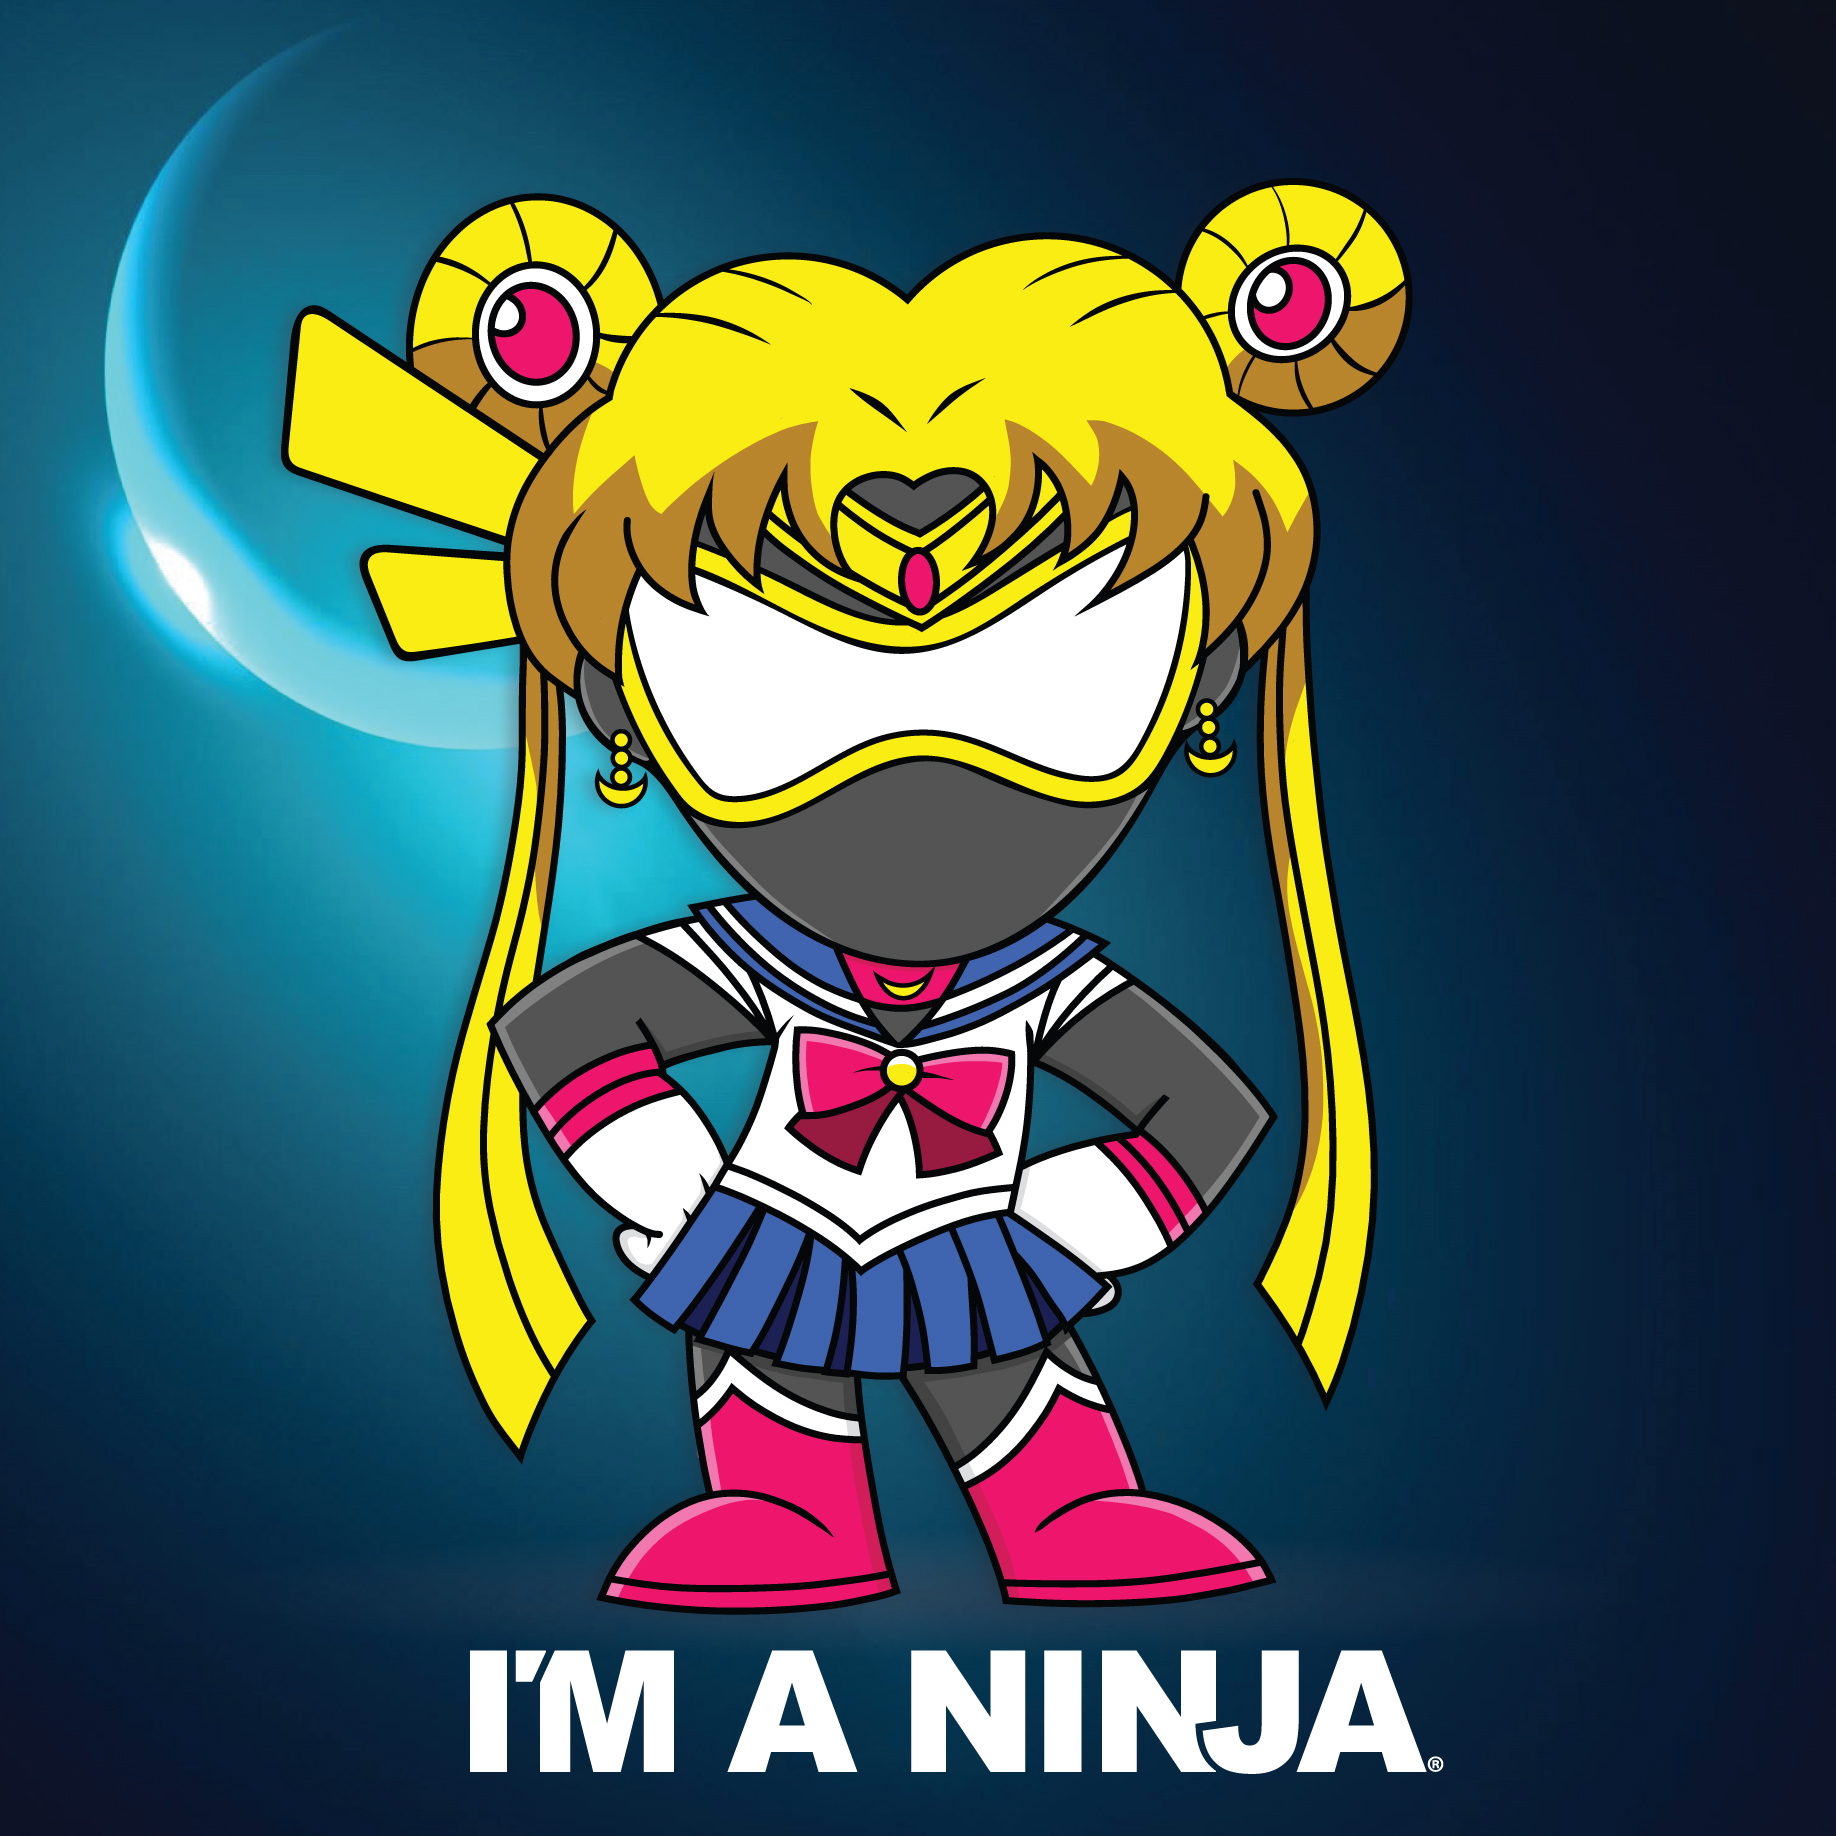 Sailor Moon x I'M A NINJA